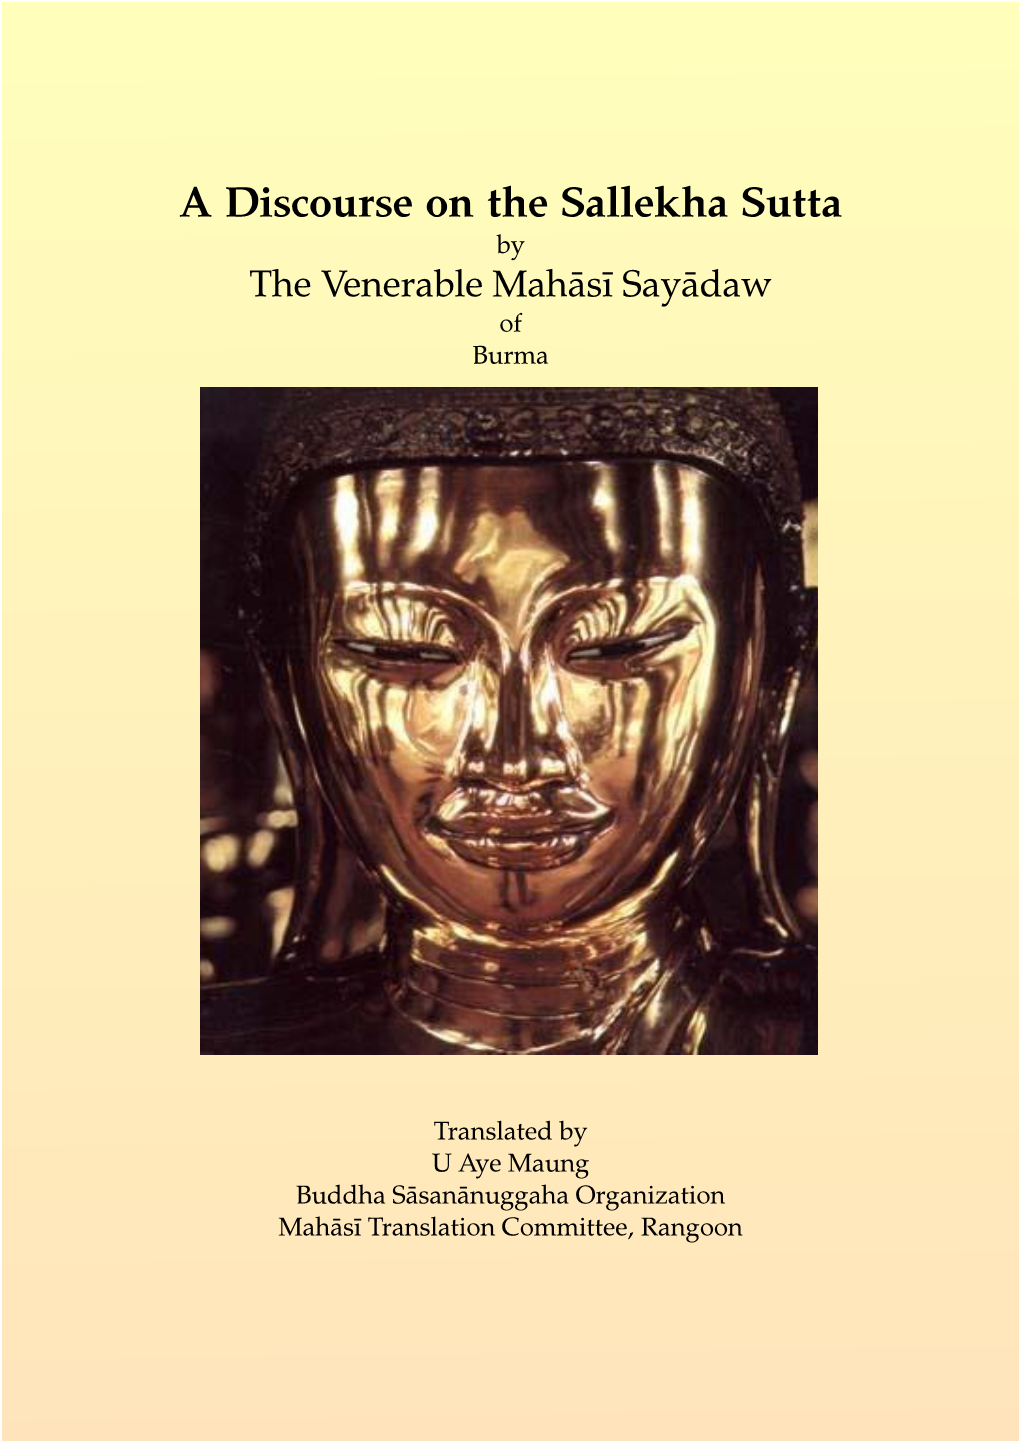 A Discourse on the Sallekha Sutta by the Venerable Mahāsī Sayādaw of Burma